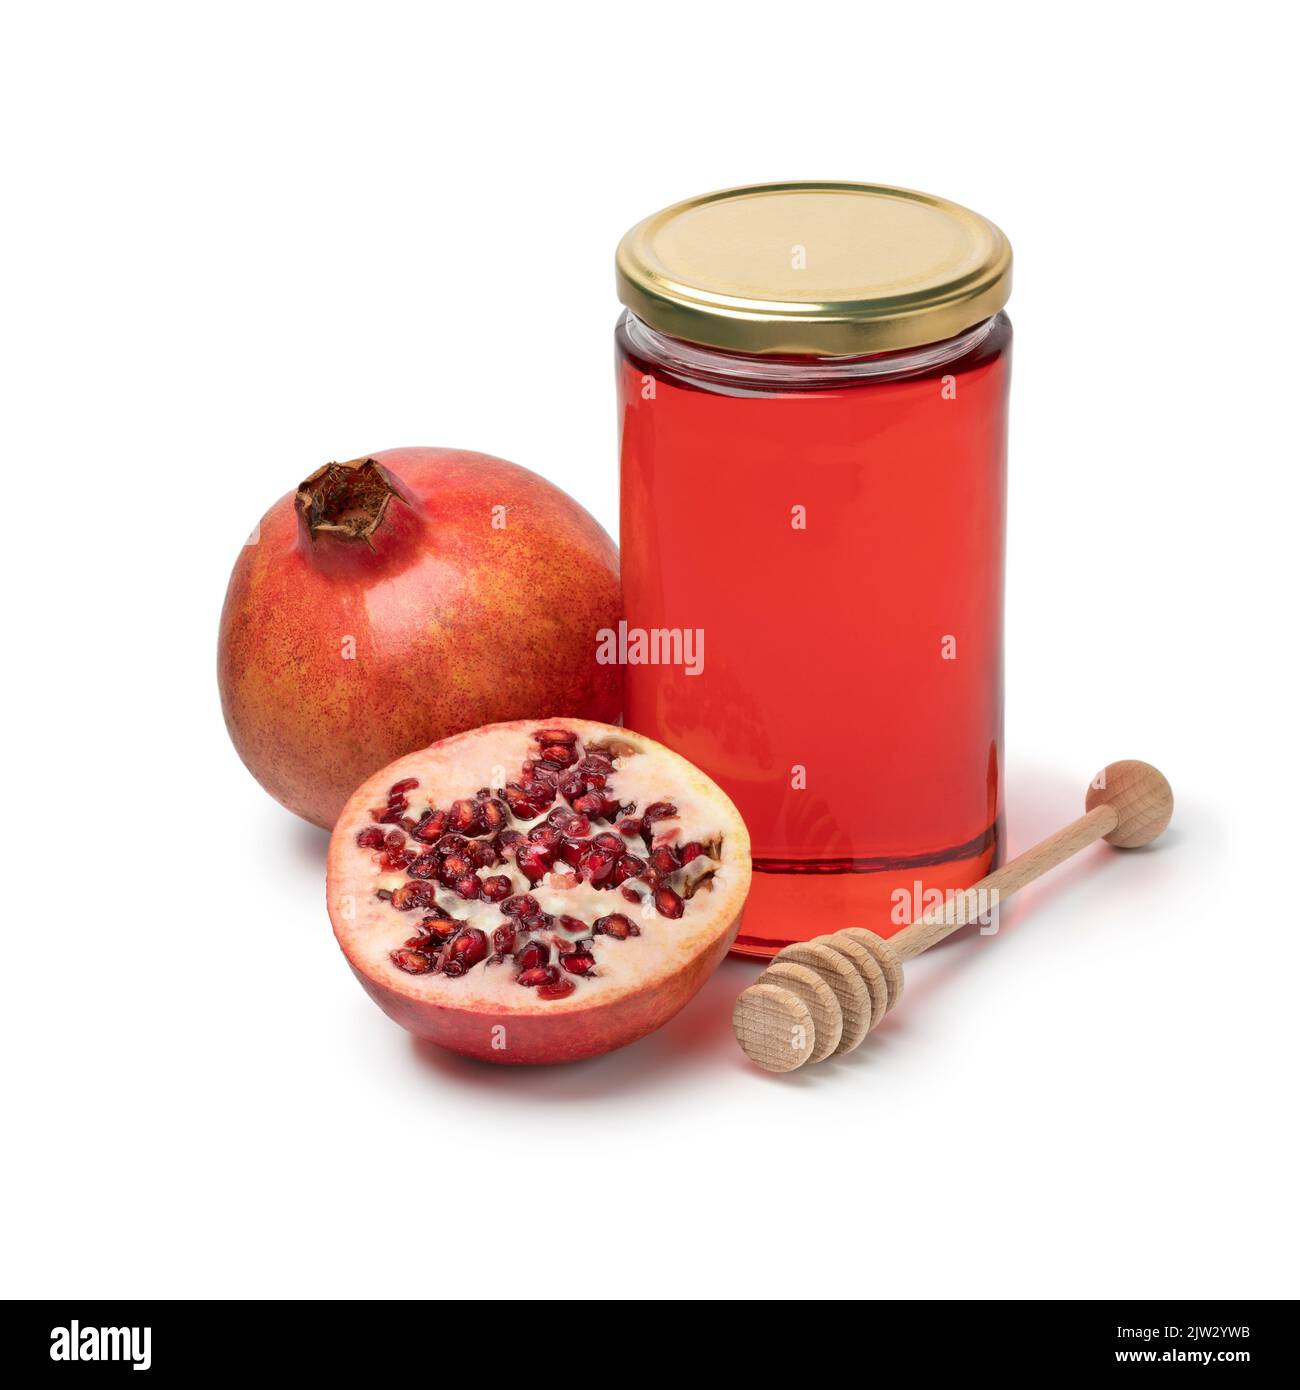 Tarro de vidrio con miel de granada y fruta fresca de granada aislada sobre fondo blanco Foto de stock